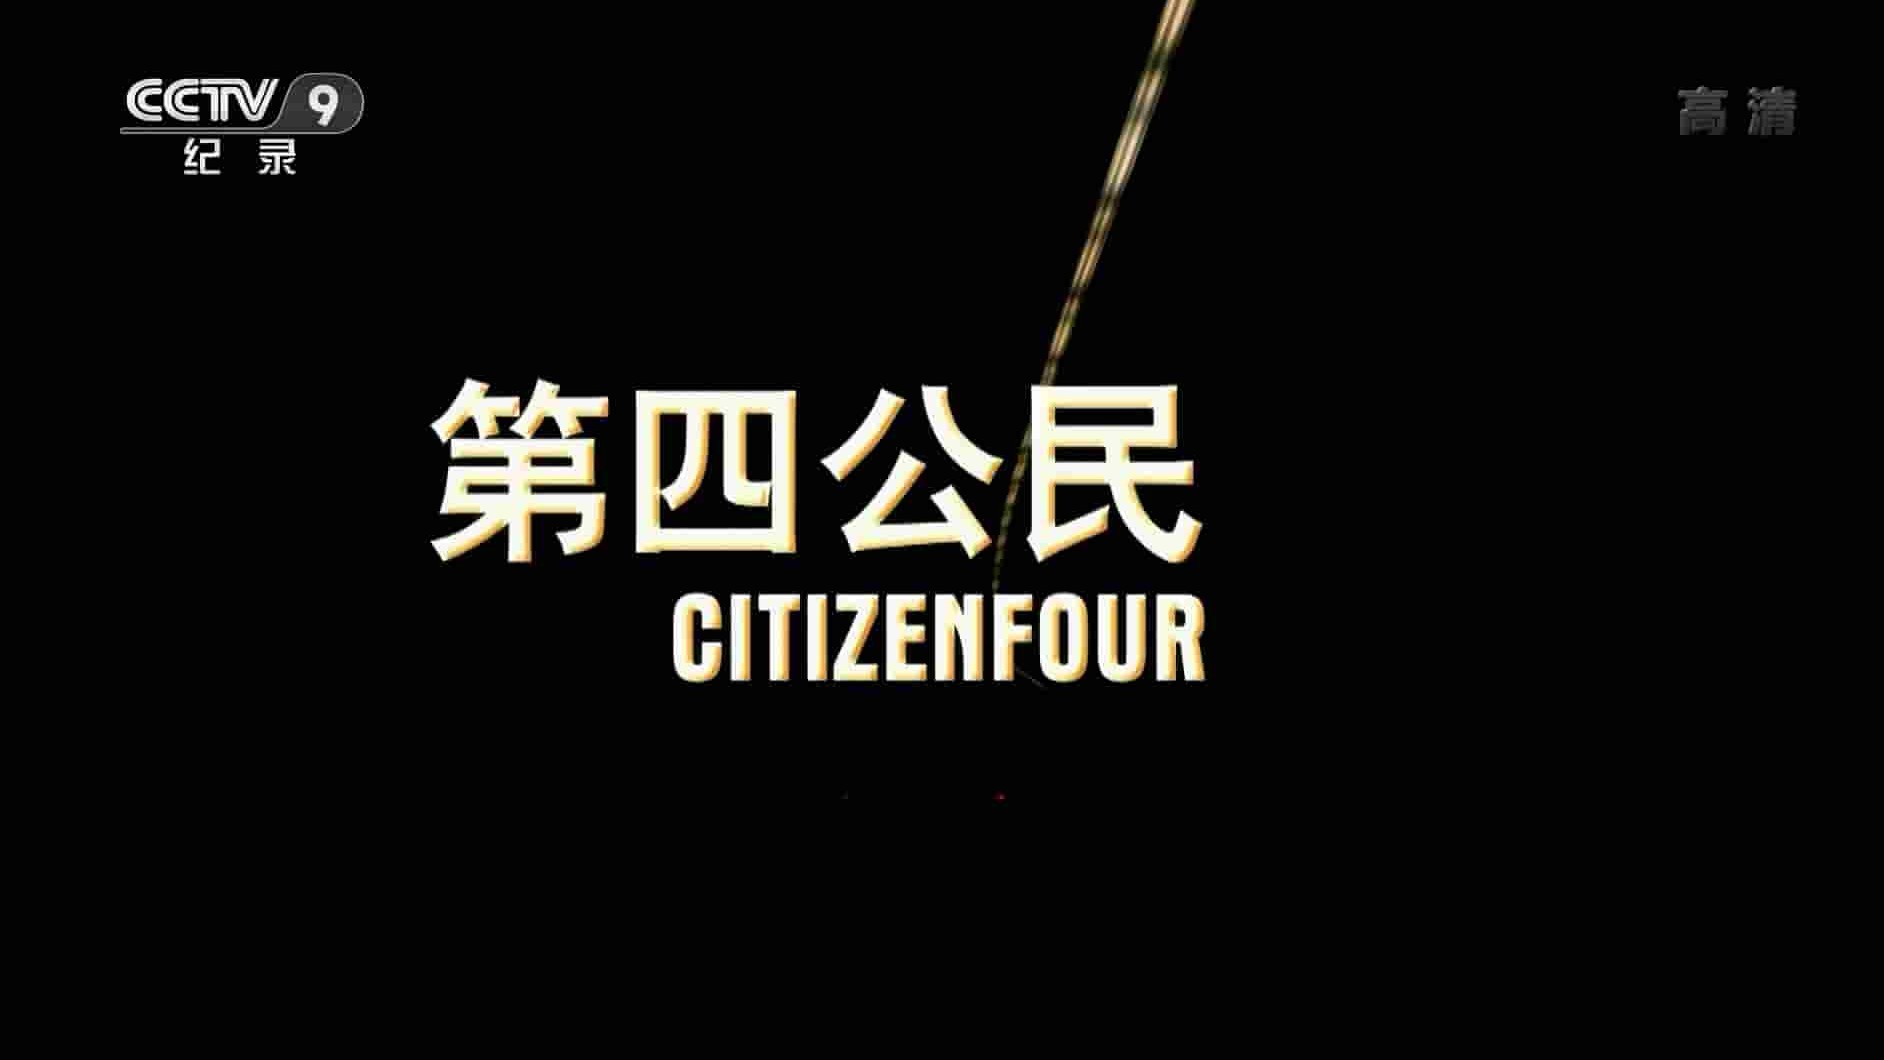 央视纪录片/棱镜门纪录片《第四公民 Citizenfour 2014》全1集 中英双字 720p高清网盘下载